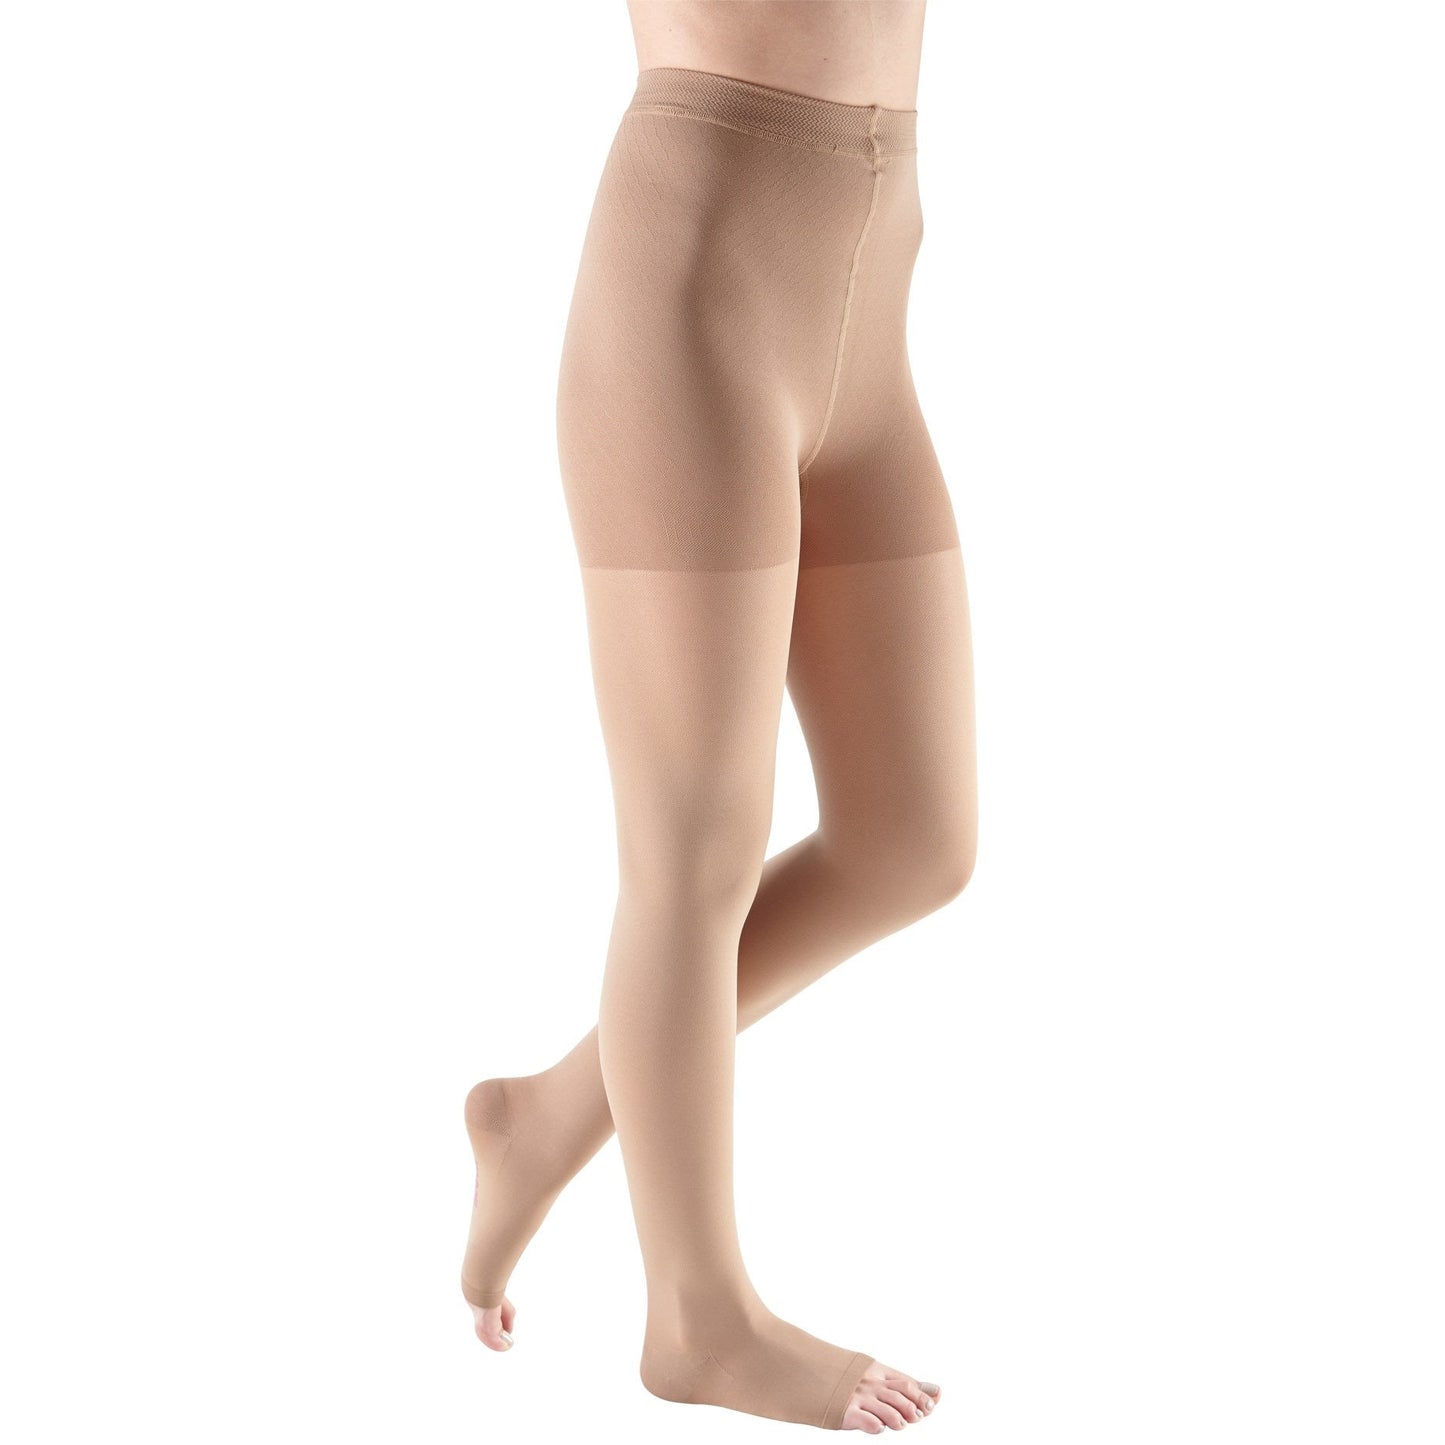 Mediven Comfort Pantyhose 20-30 mmHg, Open Toe [OVERSTOCK]